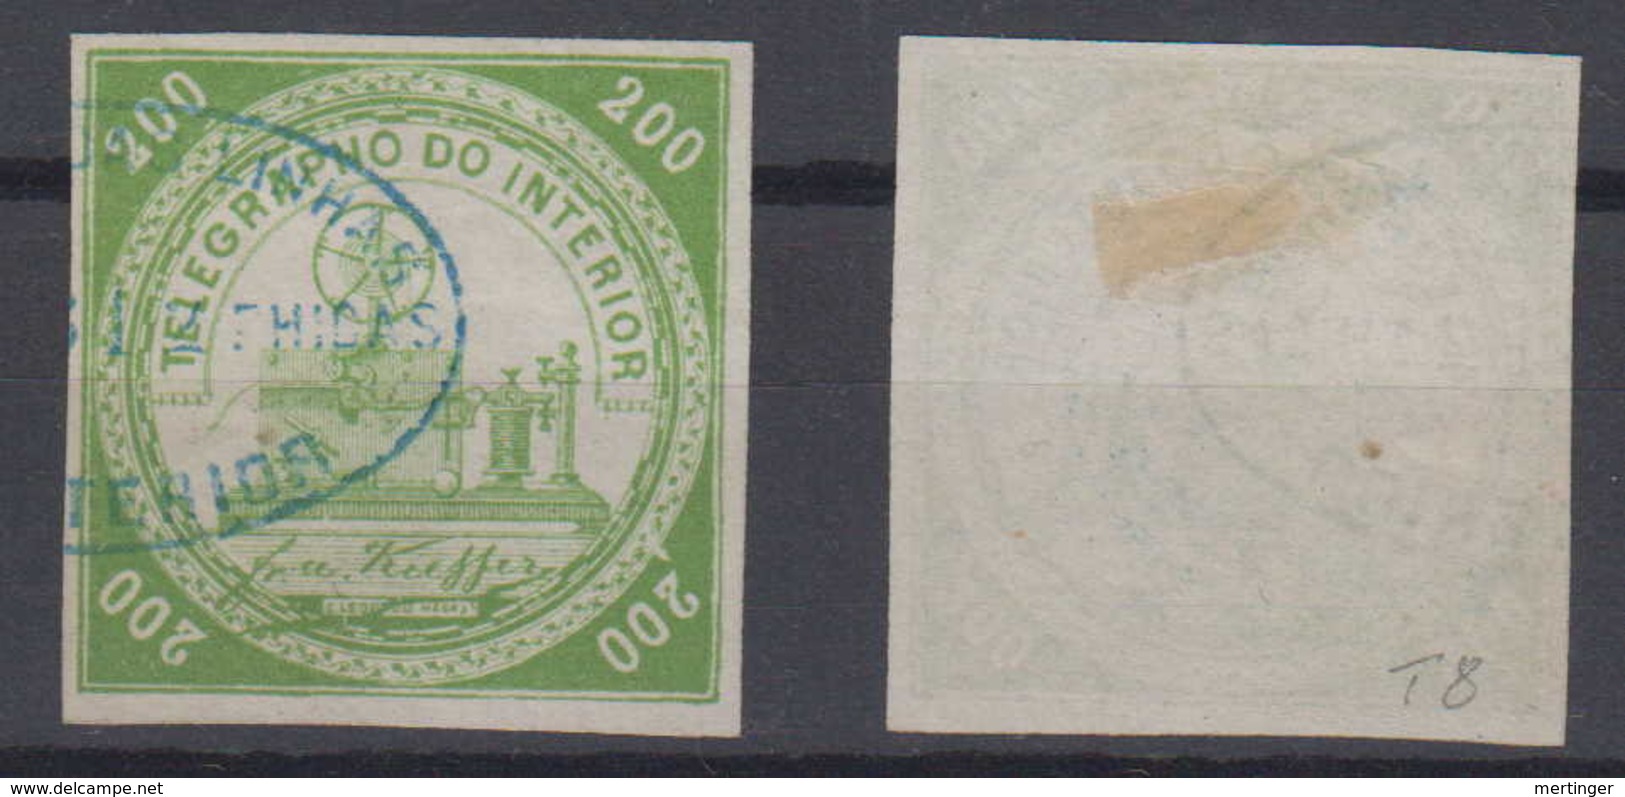 Brazil Brasil Telegrafo Telegraph 1869 200R Used Kiefer Good Margins - Telegraph